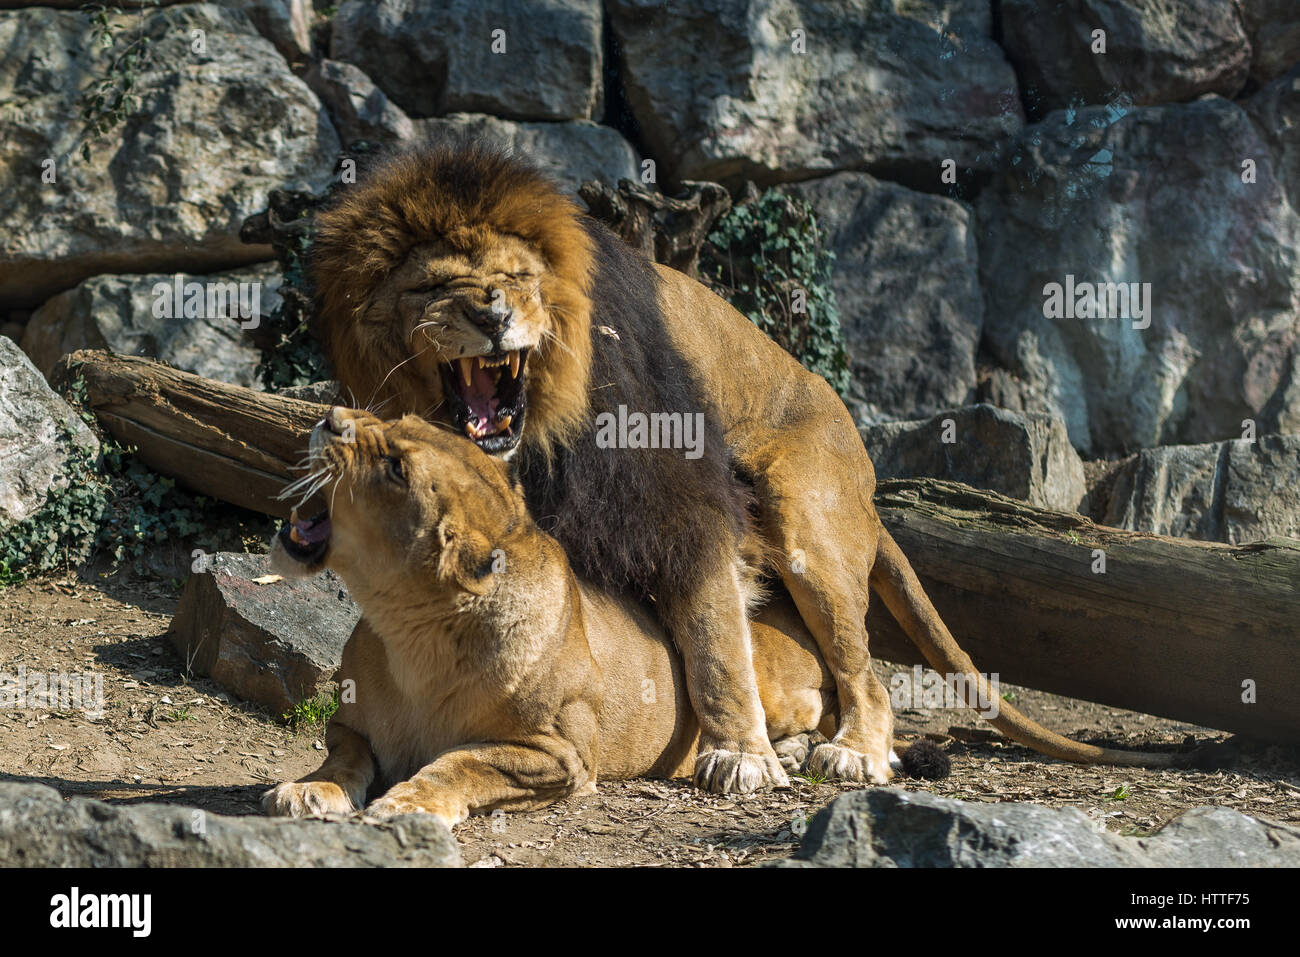 Lion and lioness in mating, horizontal image Leone e leonessa in accoppiamento Stock Photo